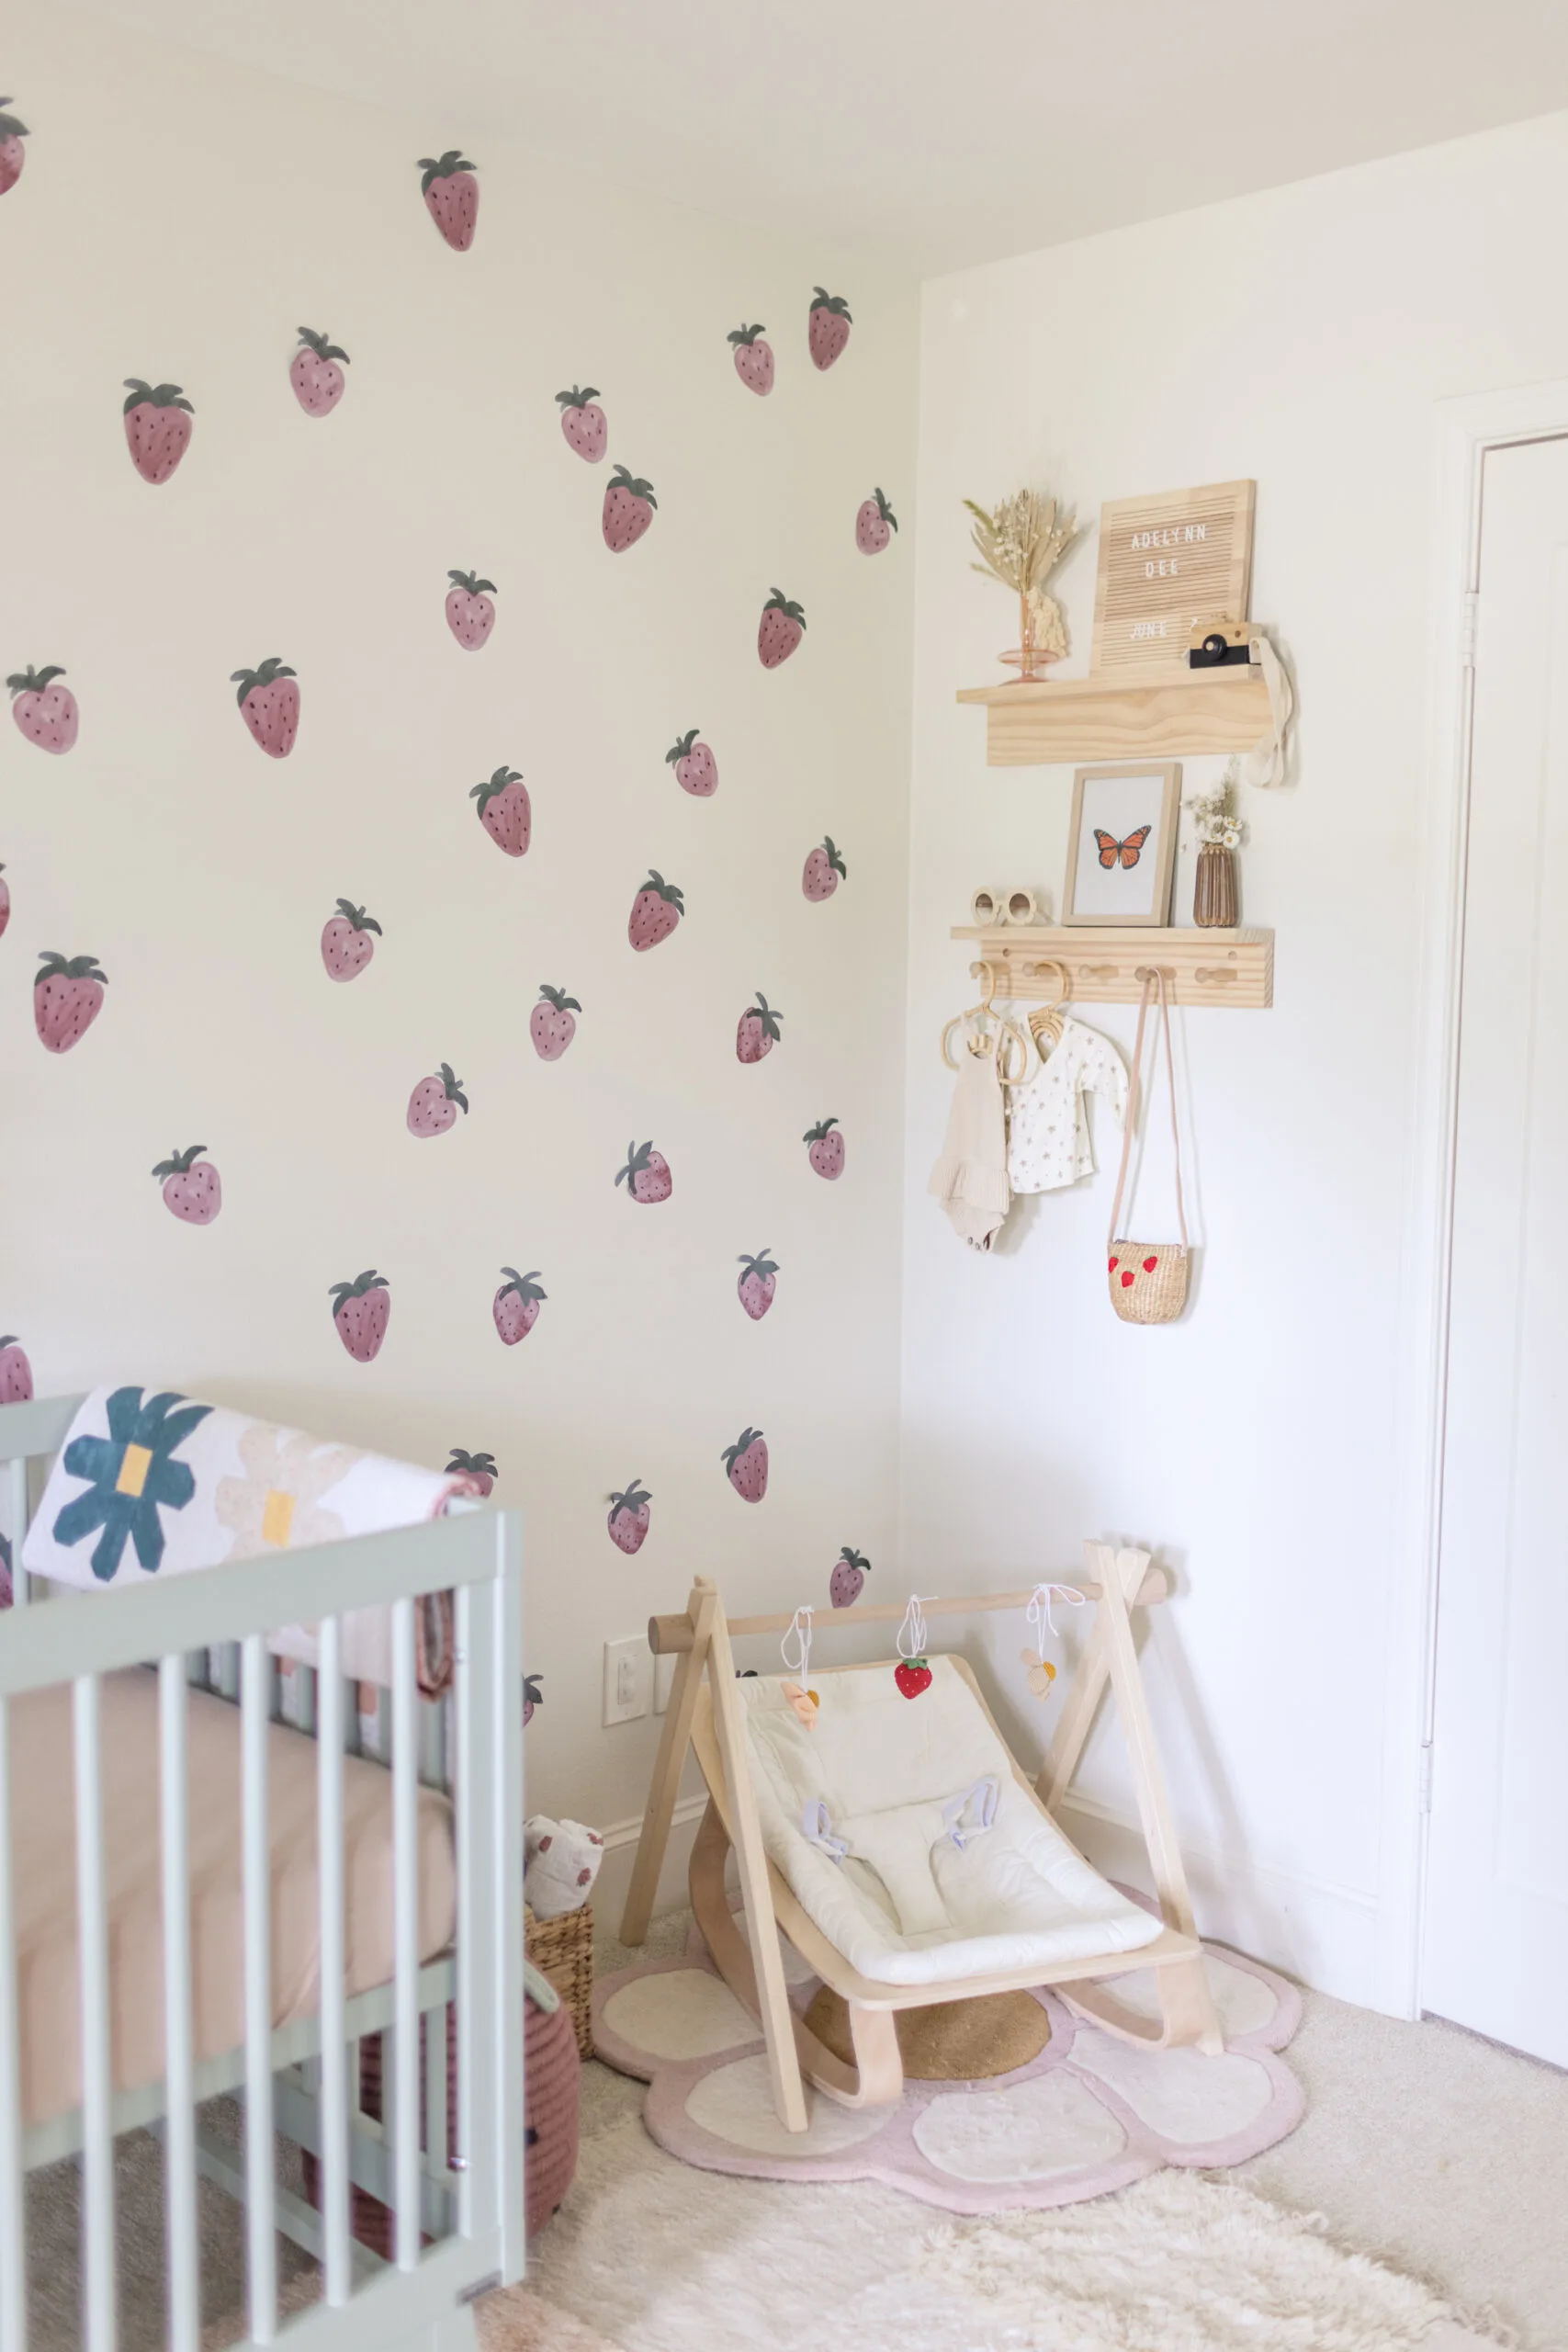 An oh-so-sweet nursery for a baby girl